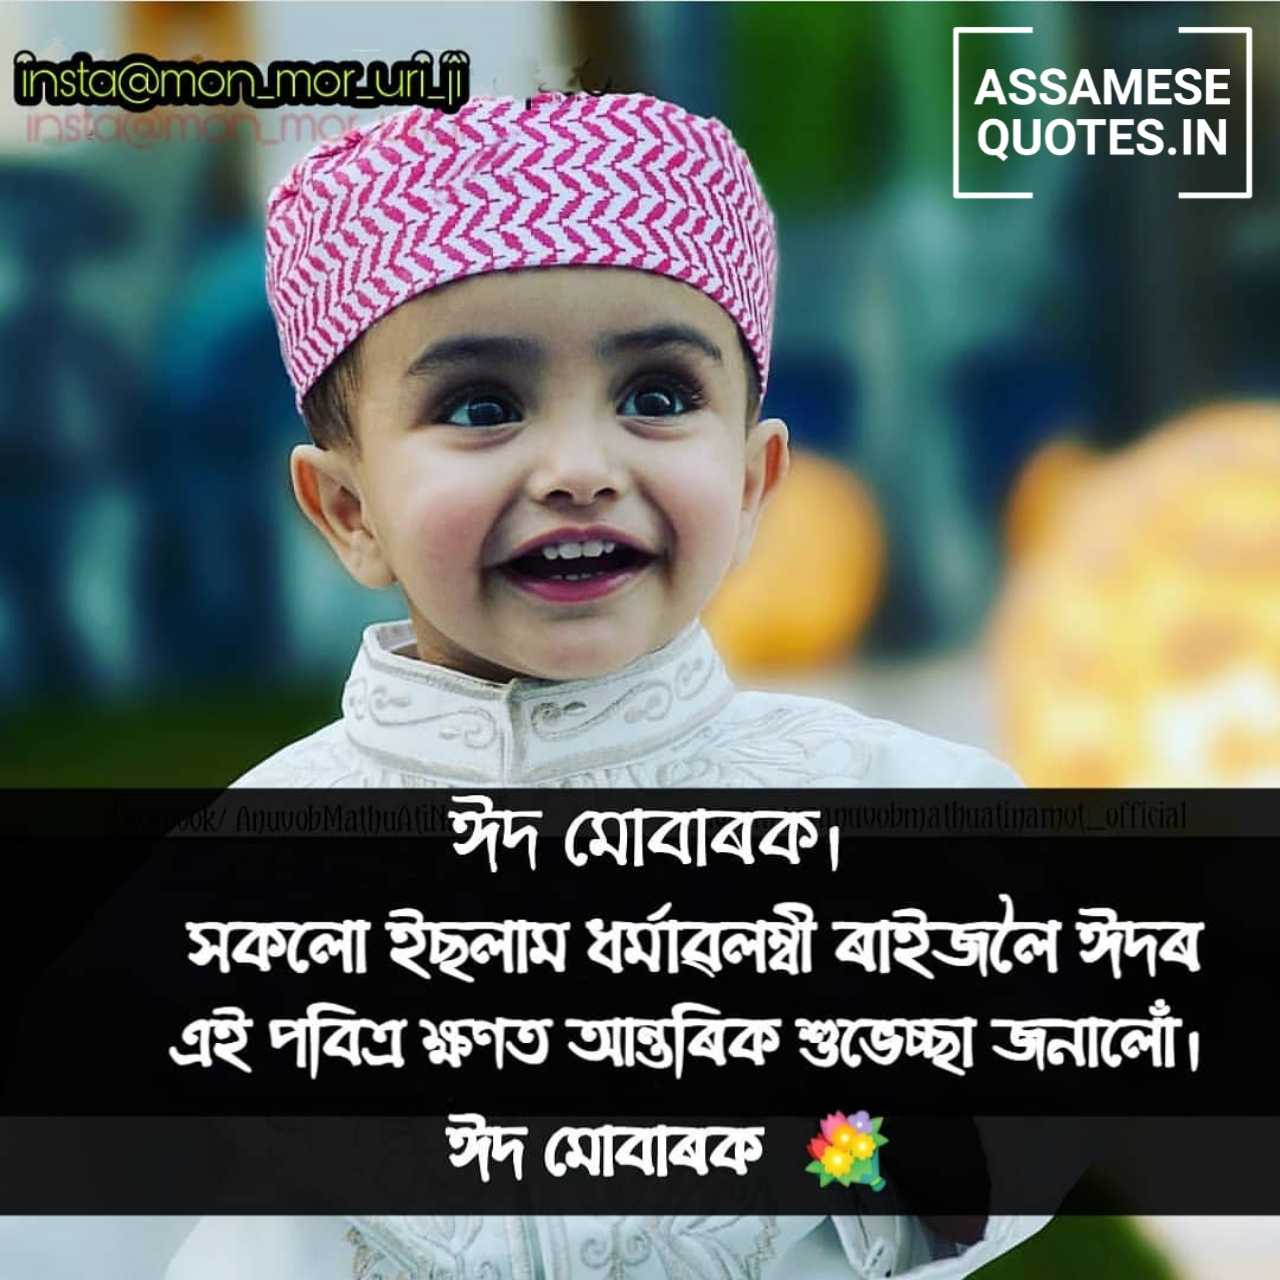 Eid Mubarak Image in Assamese | Eid Mubarak Assamese Shayari, Photo, Wish, SMS